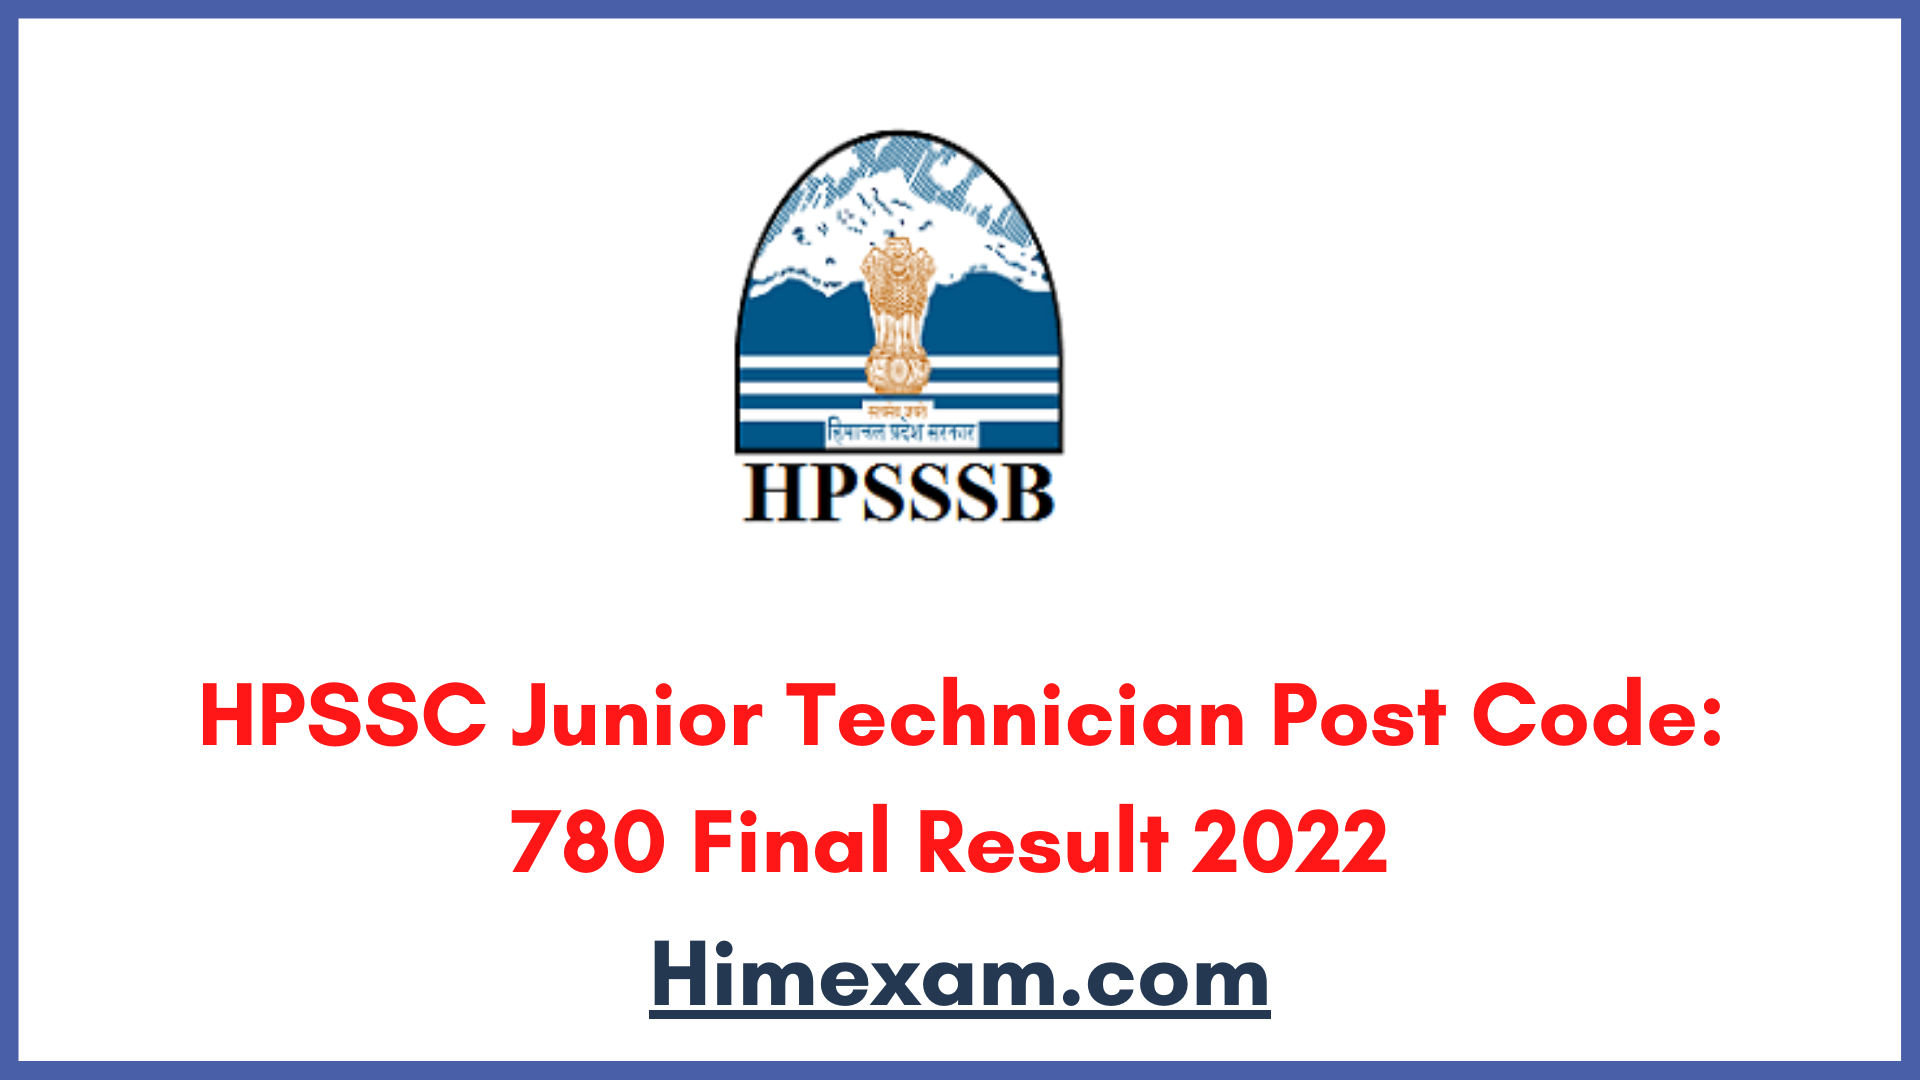 HPSSC Junior Technician Post Code: 780 Final Result 2022